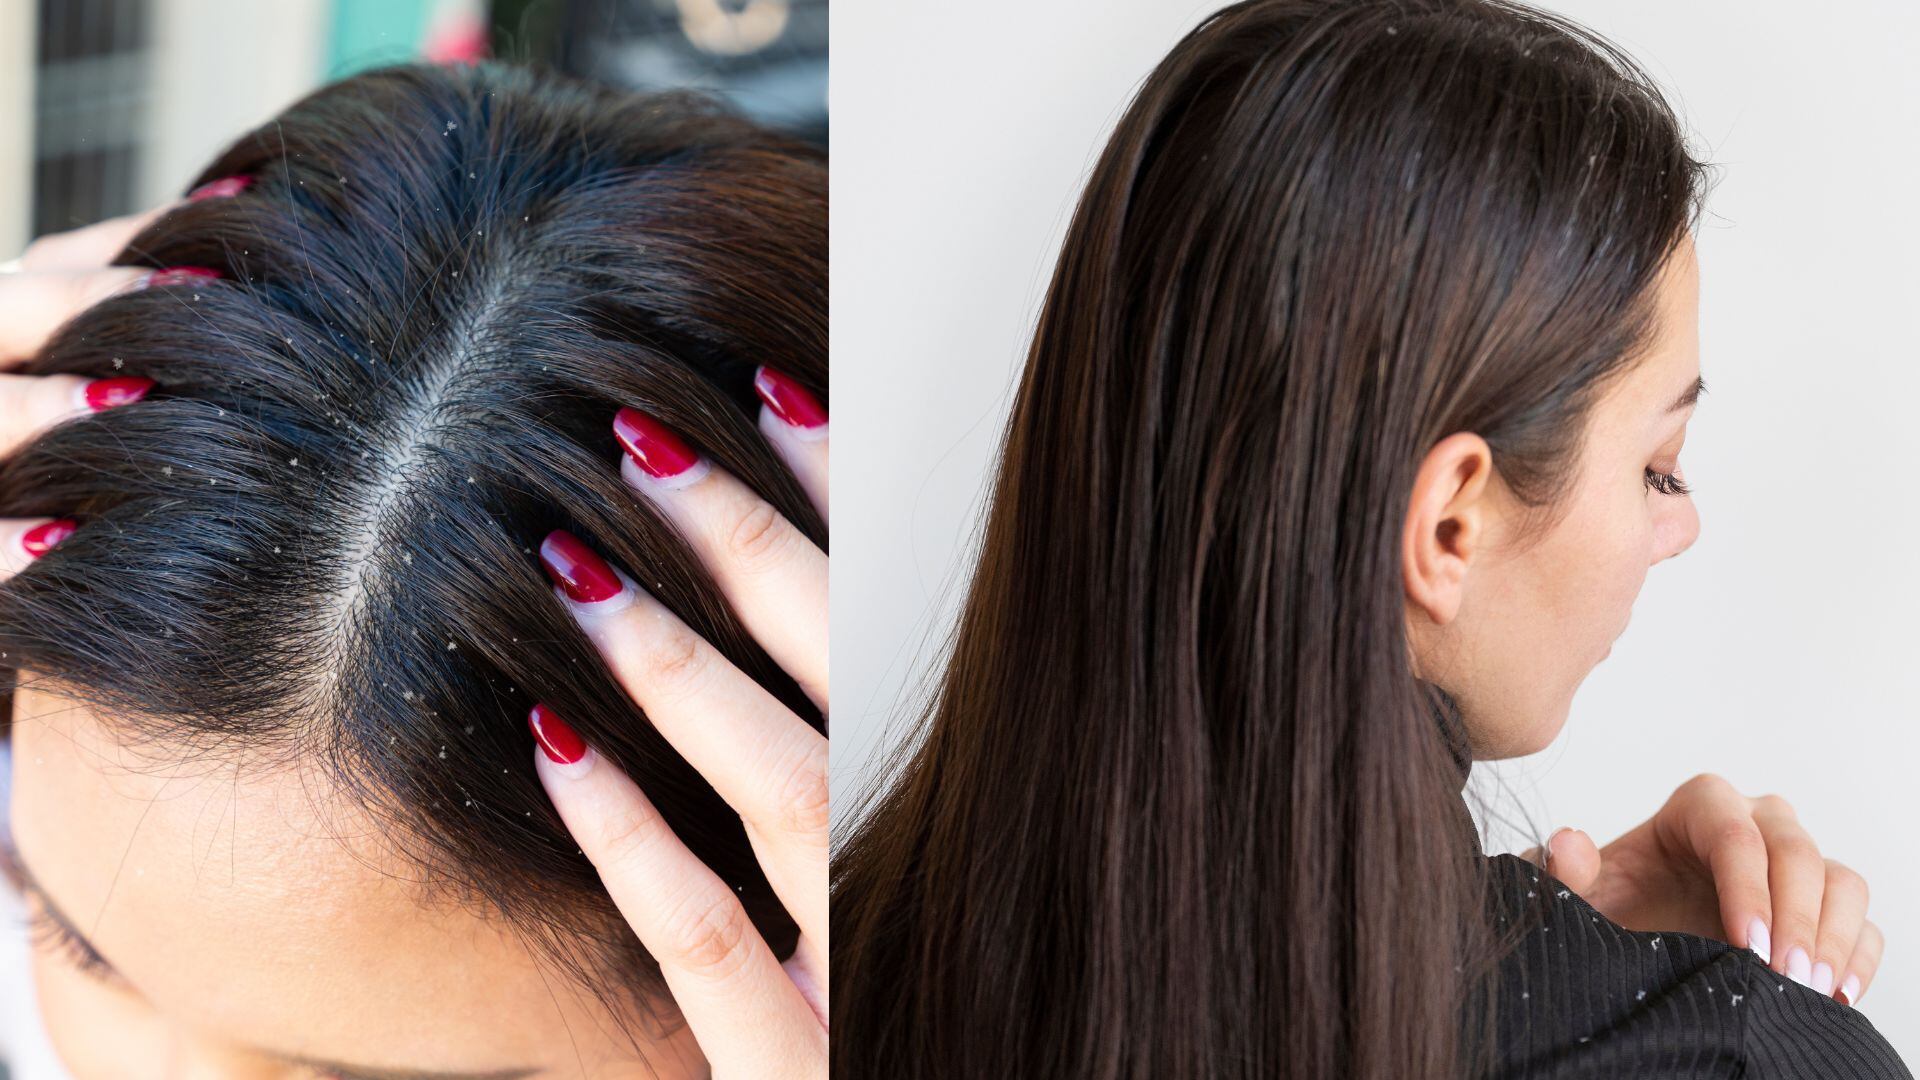 Consultar a un dermatólogo puede ayudar significativamente a reducir la presencia de caspa y mejorar la salud del cuero cabelludo.